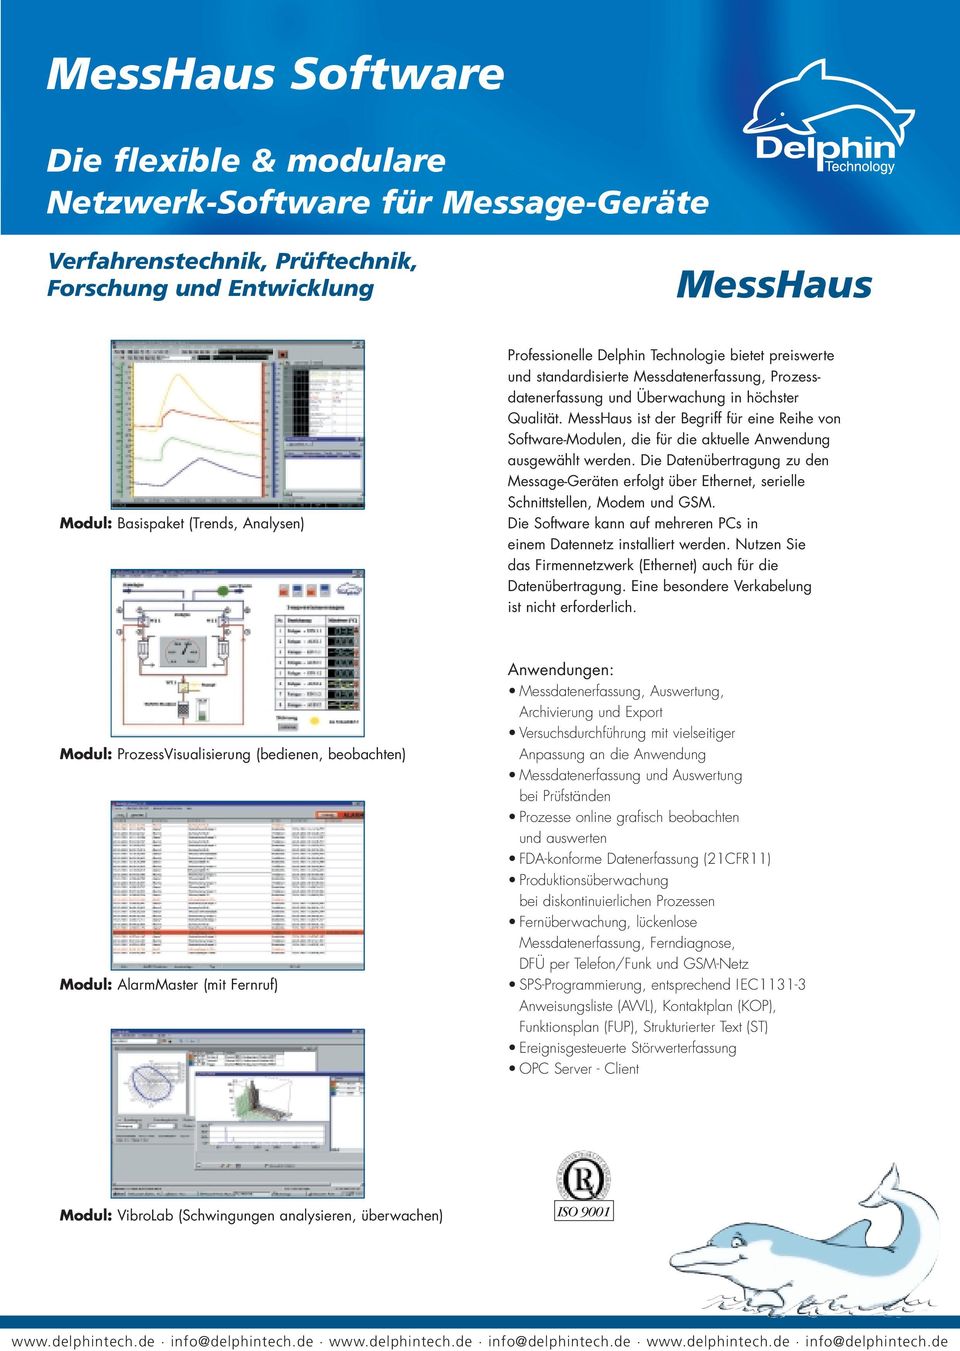 MessHaus ist der Begriff für eine Reihe von Software-Modulen, die für die aktuelle Anwendung ausgewählt werden.